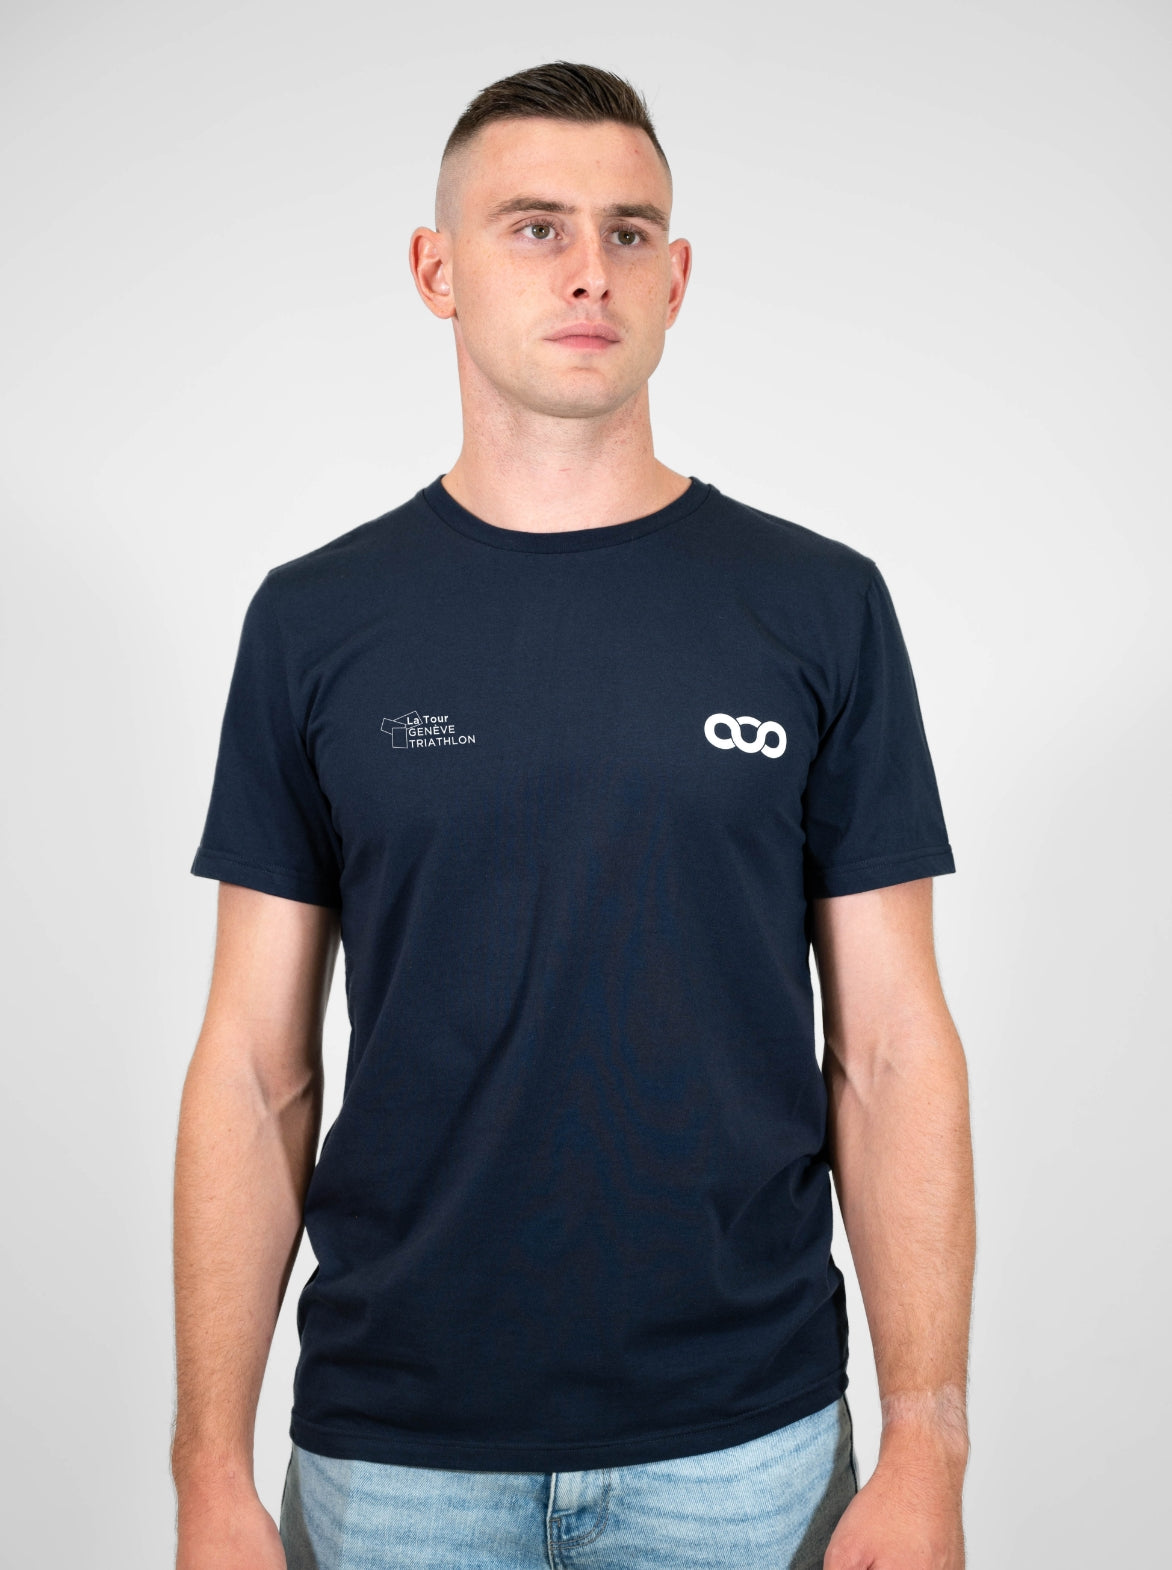 T-shirt coton Homme Made in France et Bio — La Tour Genève Triathlon